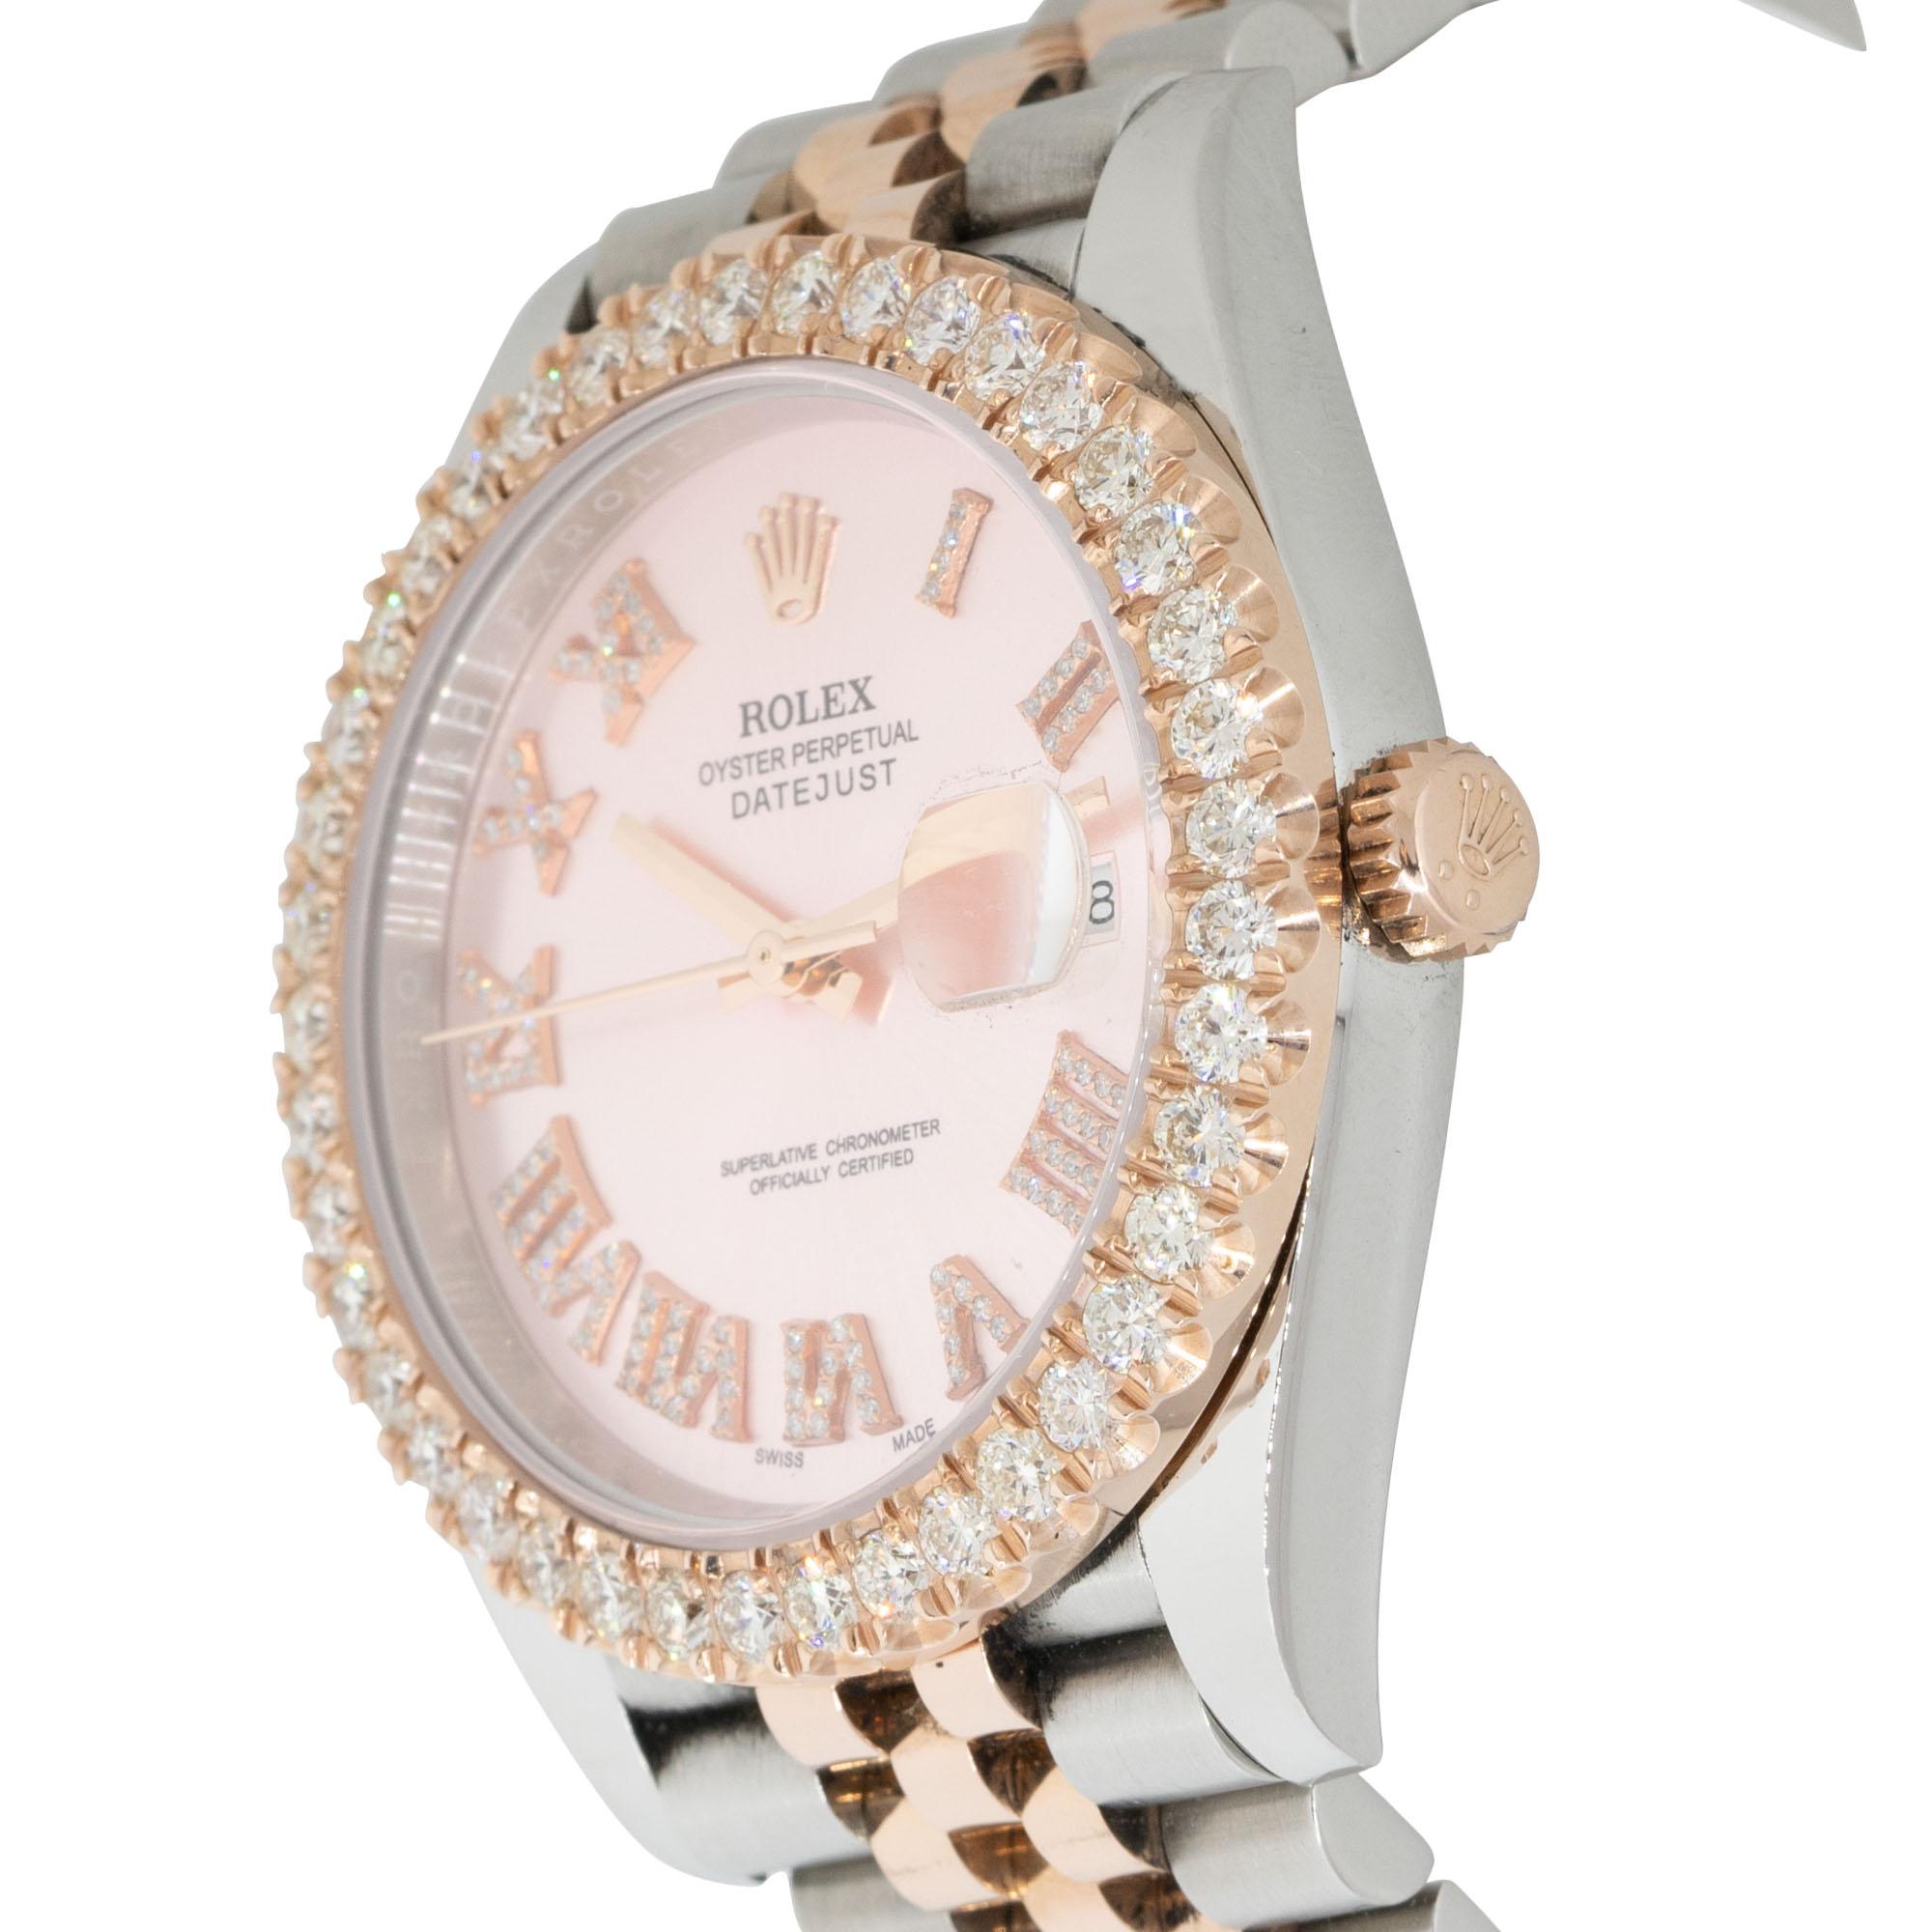 La montre Rolex 126301 Datejust Two Tone 41mm Rose Dial Diamond est un garde-temps luxueux et exquis qui allie sans effort style et opulence. Cette montre présente un boîtier de 41 mm avec une harmonieuse combinaison bicolore d'acier inoxydable et